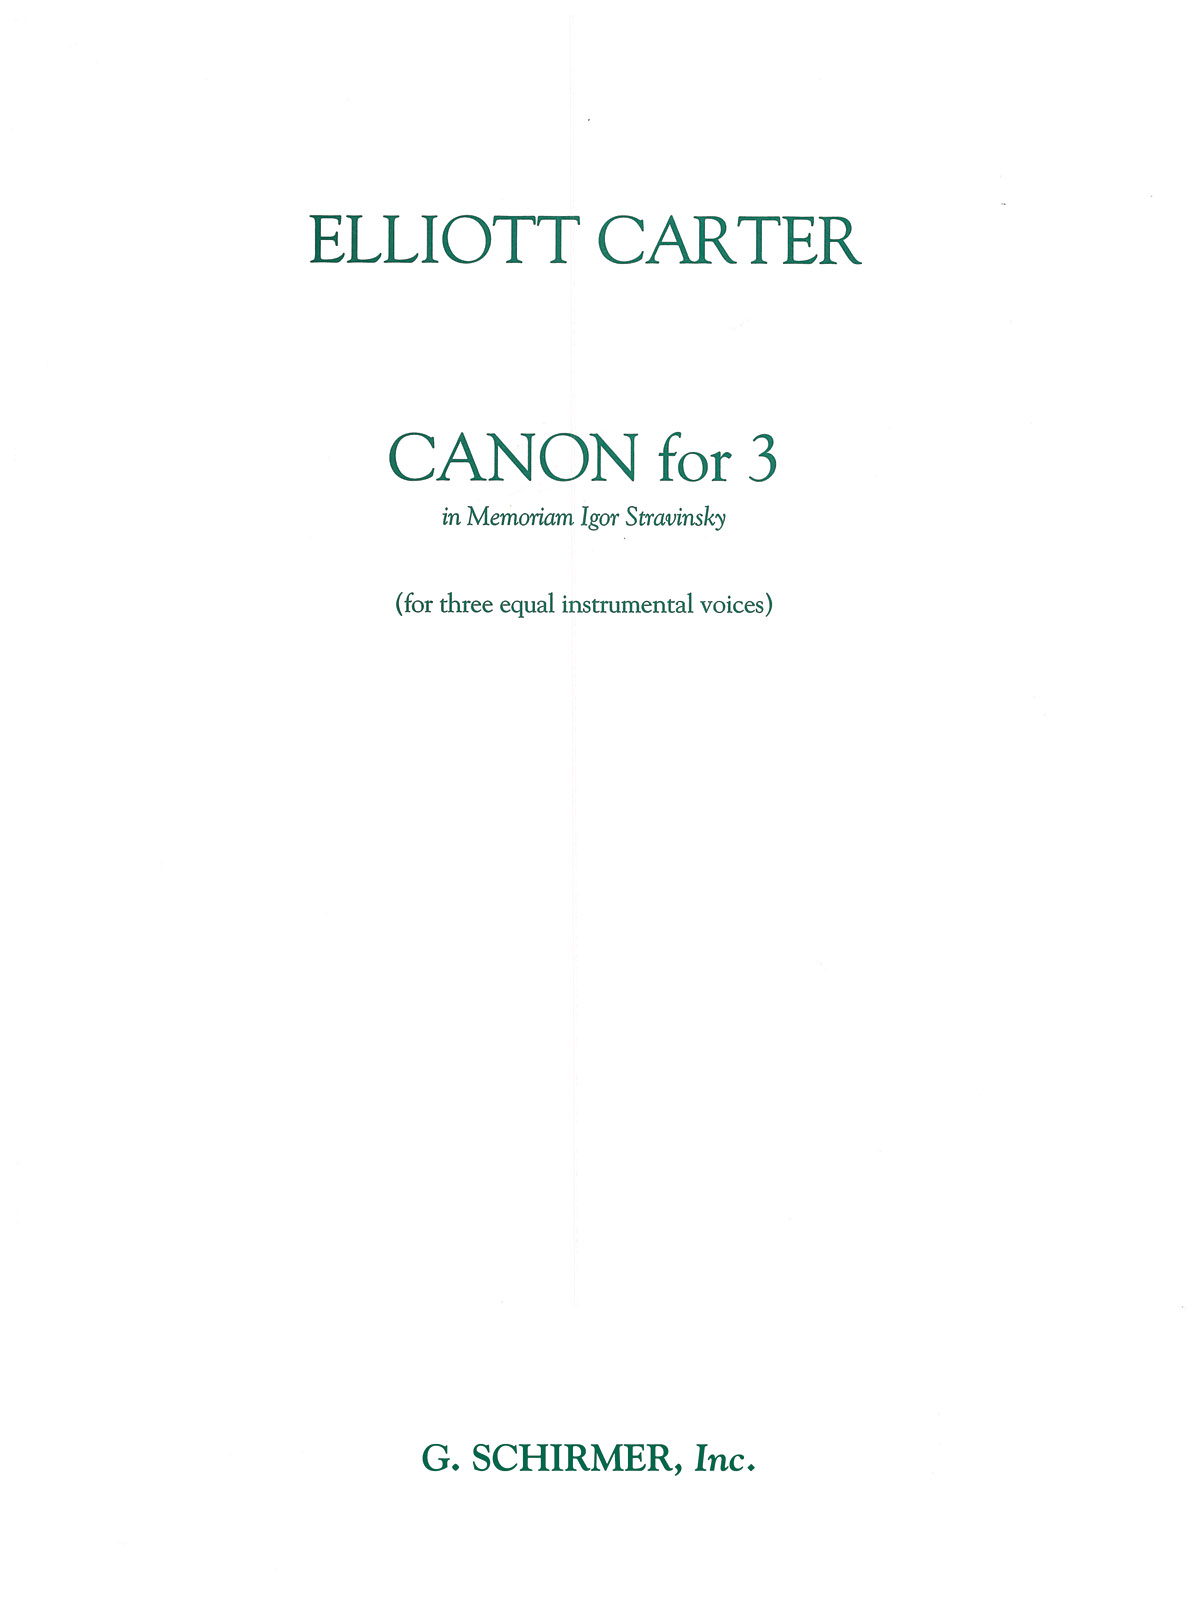 Elliott Carter: Canon for 3 - In Memoriam of Igor Stravinsky: Chamber Ensemble: